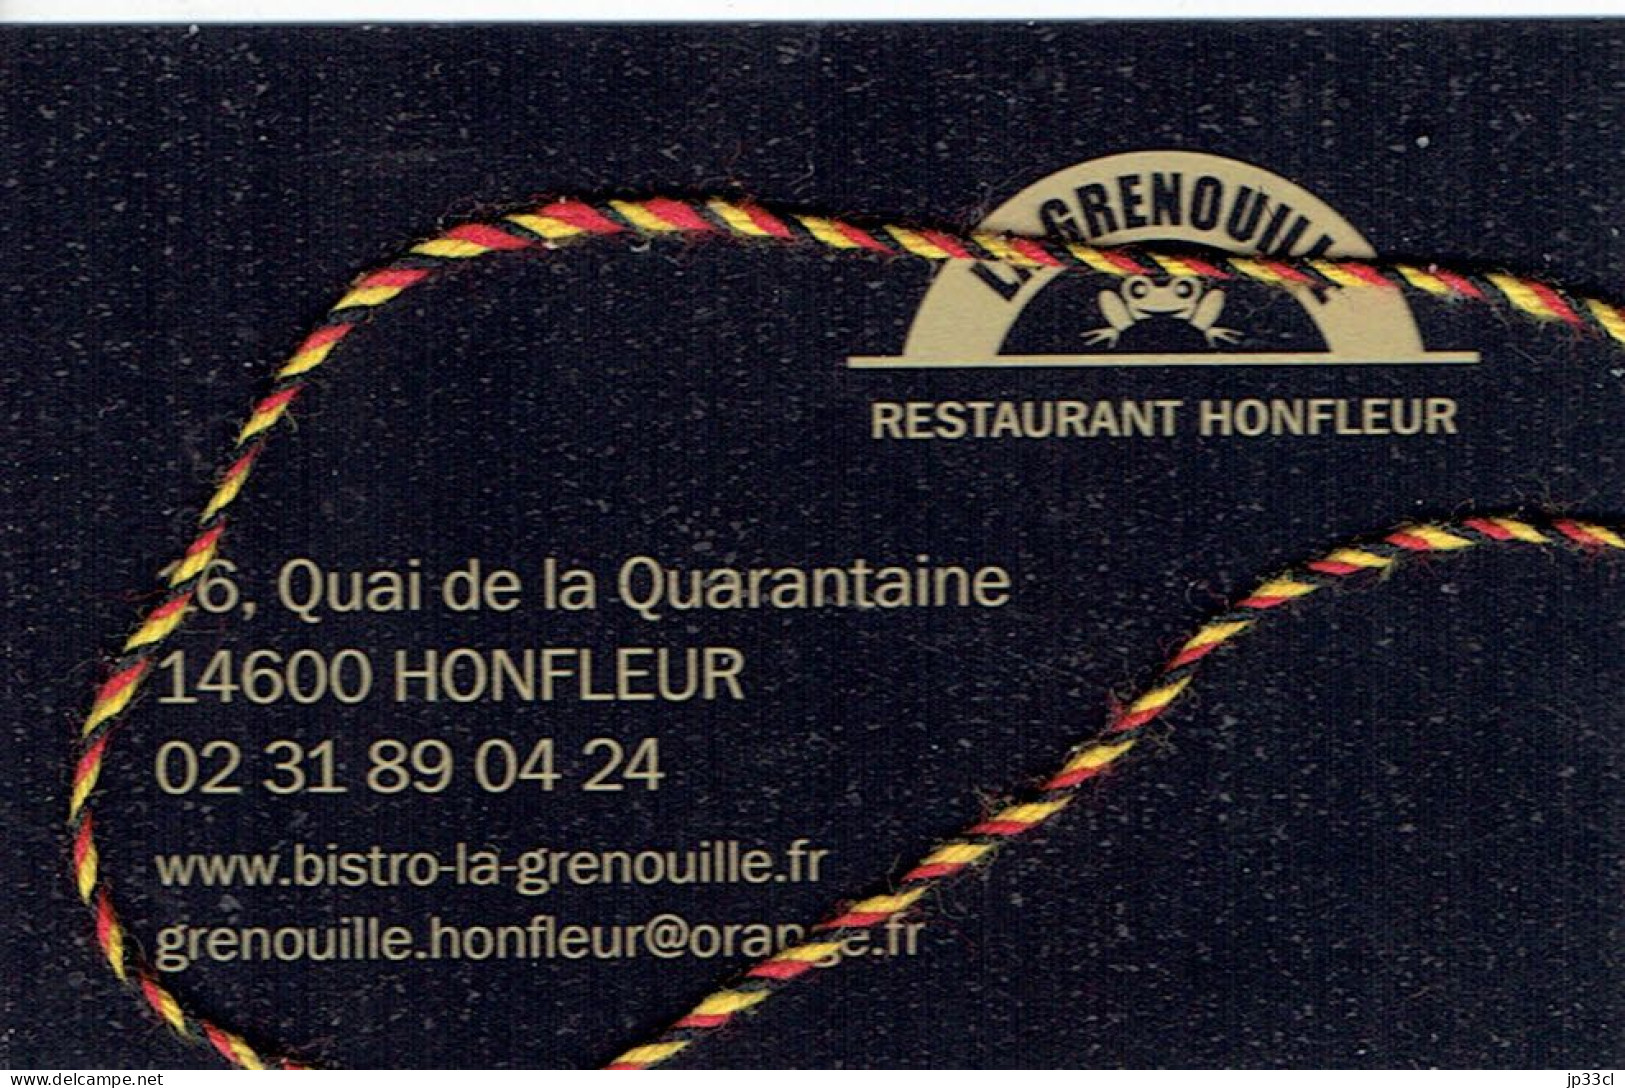 Carte Du Restaurant / Bistro "La Grenouille", Quai De La Quarantaine, Honfleur - Advertising